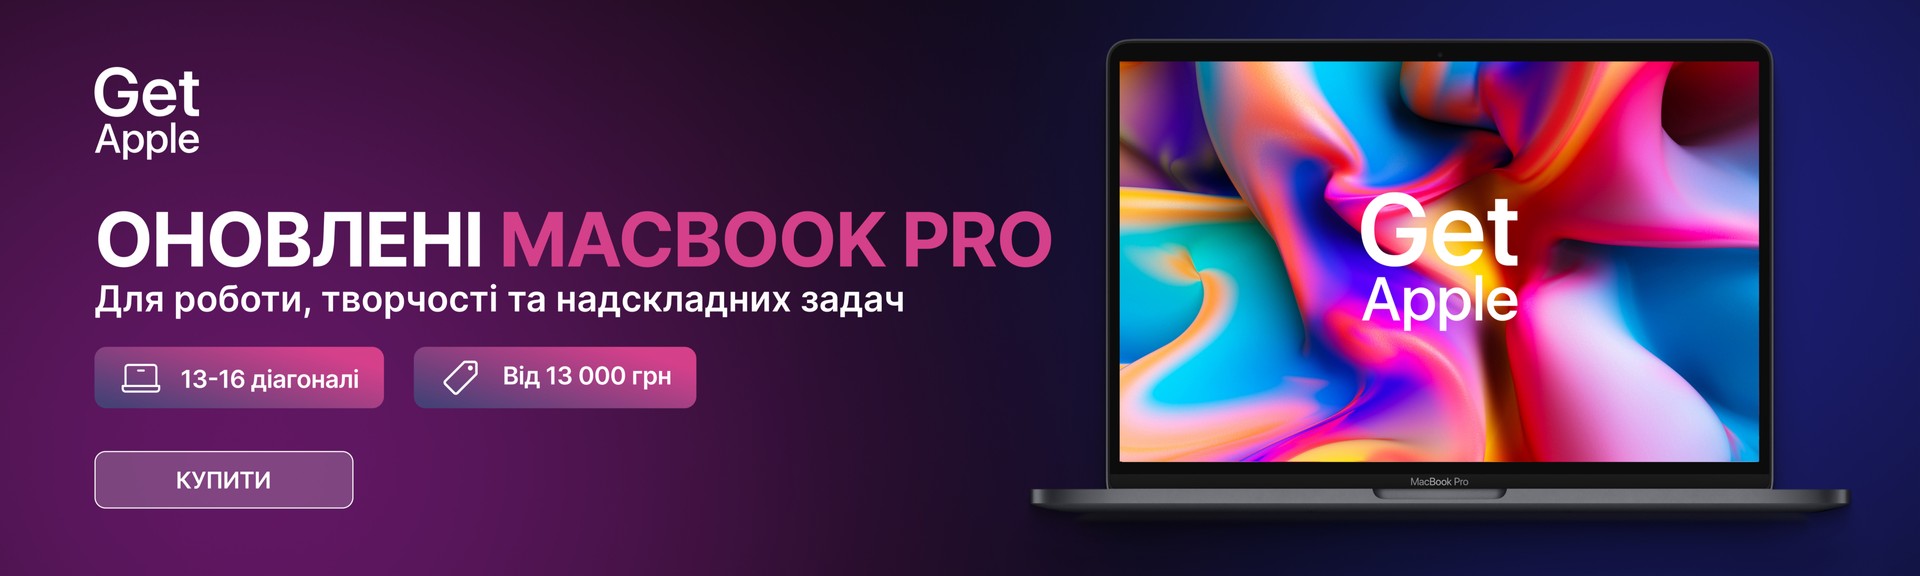 Выбирай MacBook Pro в GetApple